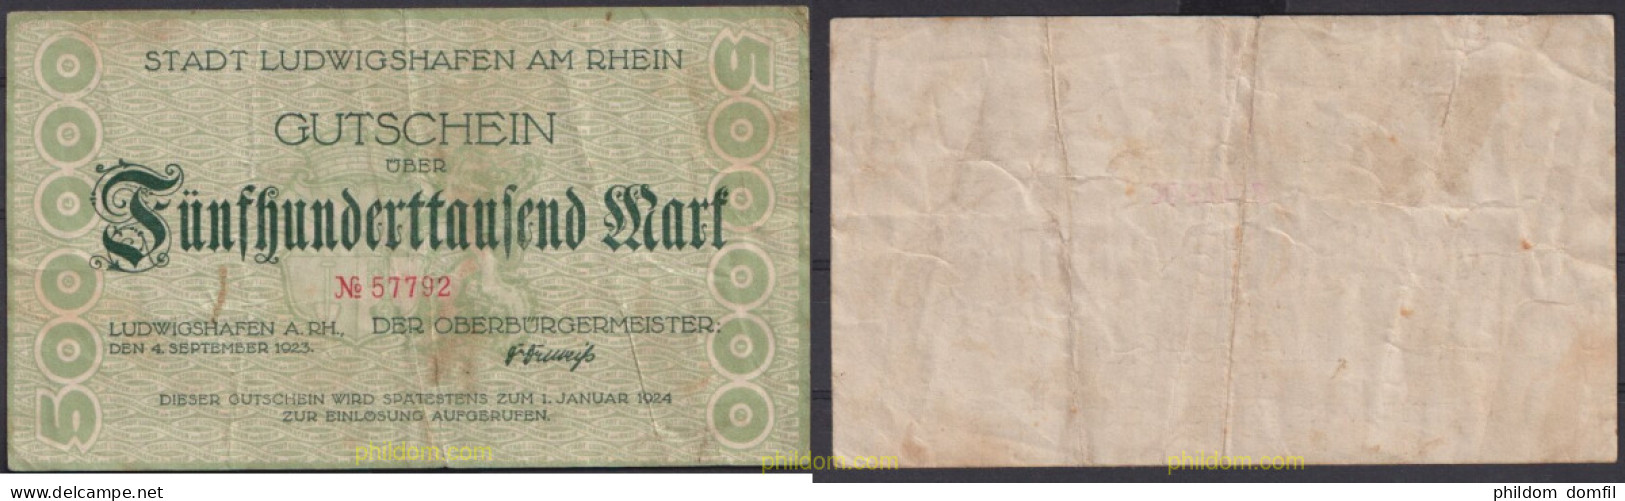 3634 ALEMANIA 1924 GUTSCHEIN 500000 MARK 1924 - Reichsschuldenverwaltung